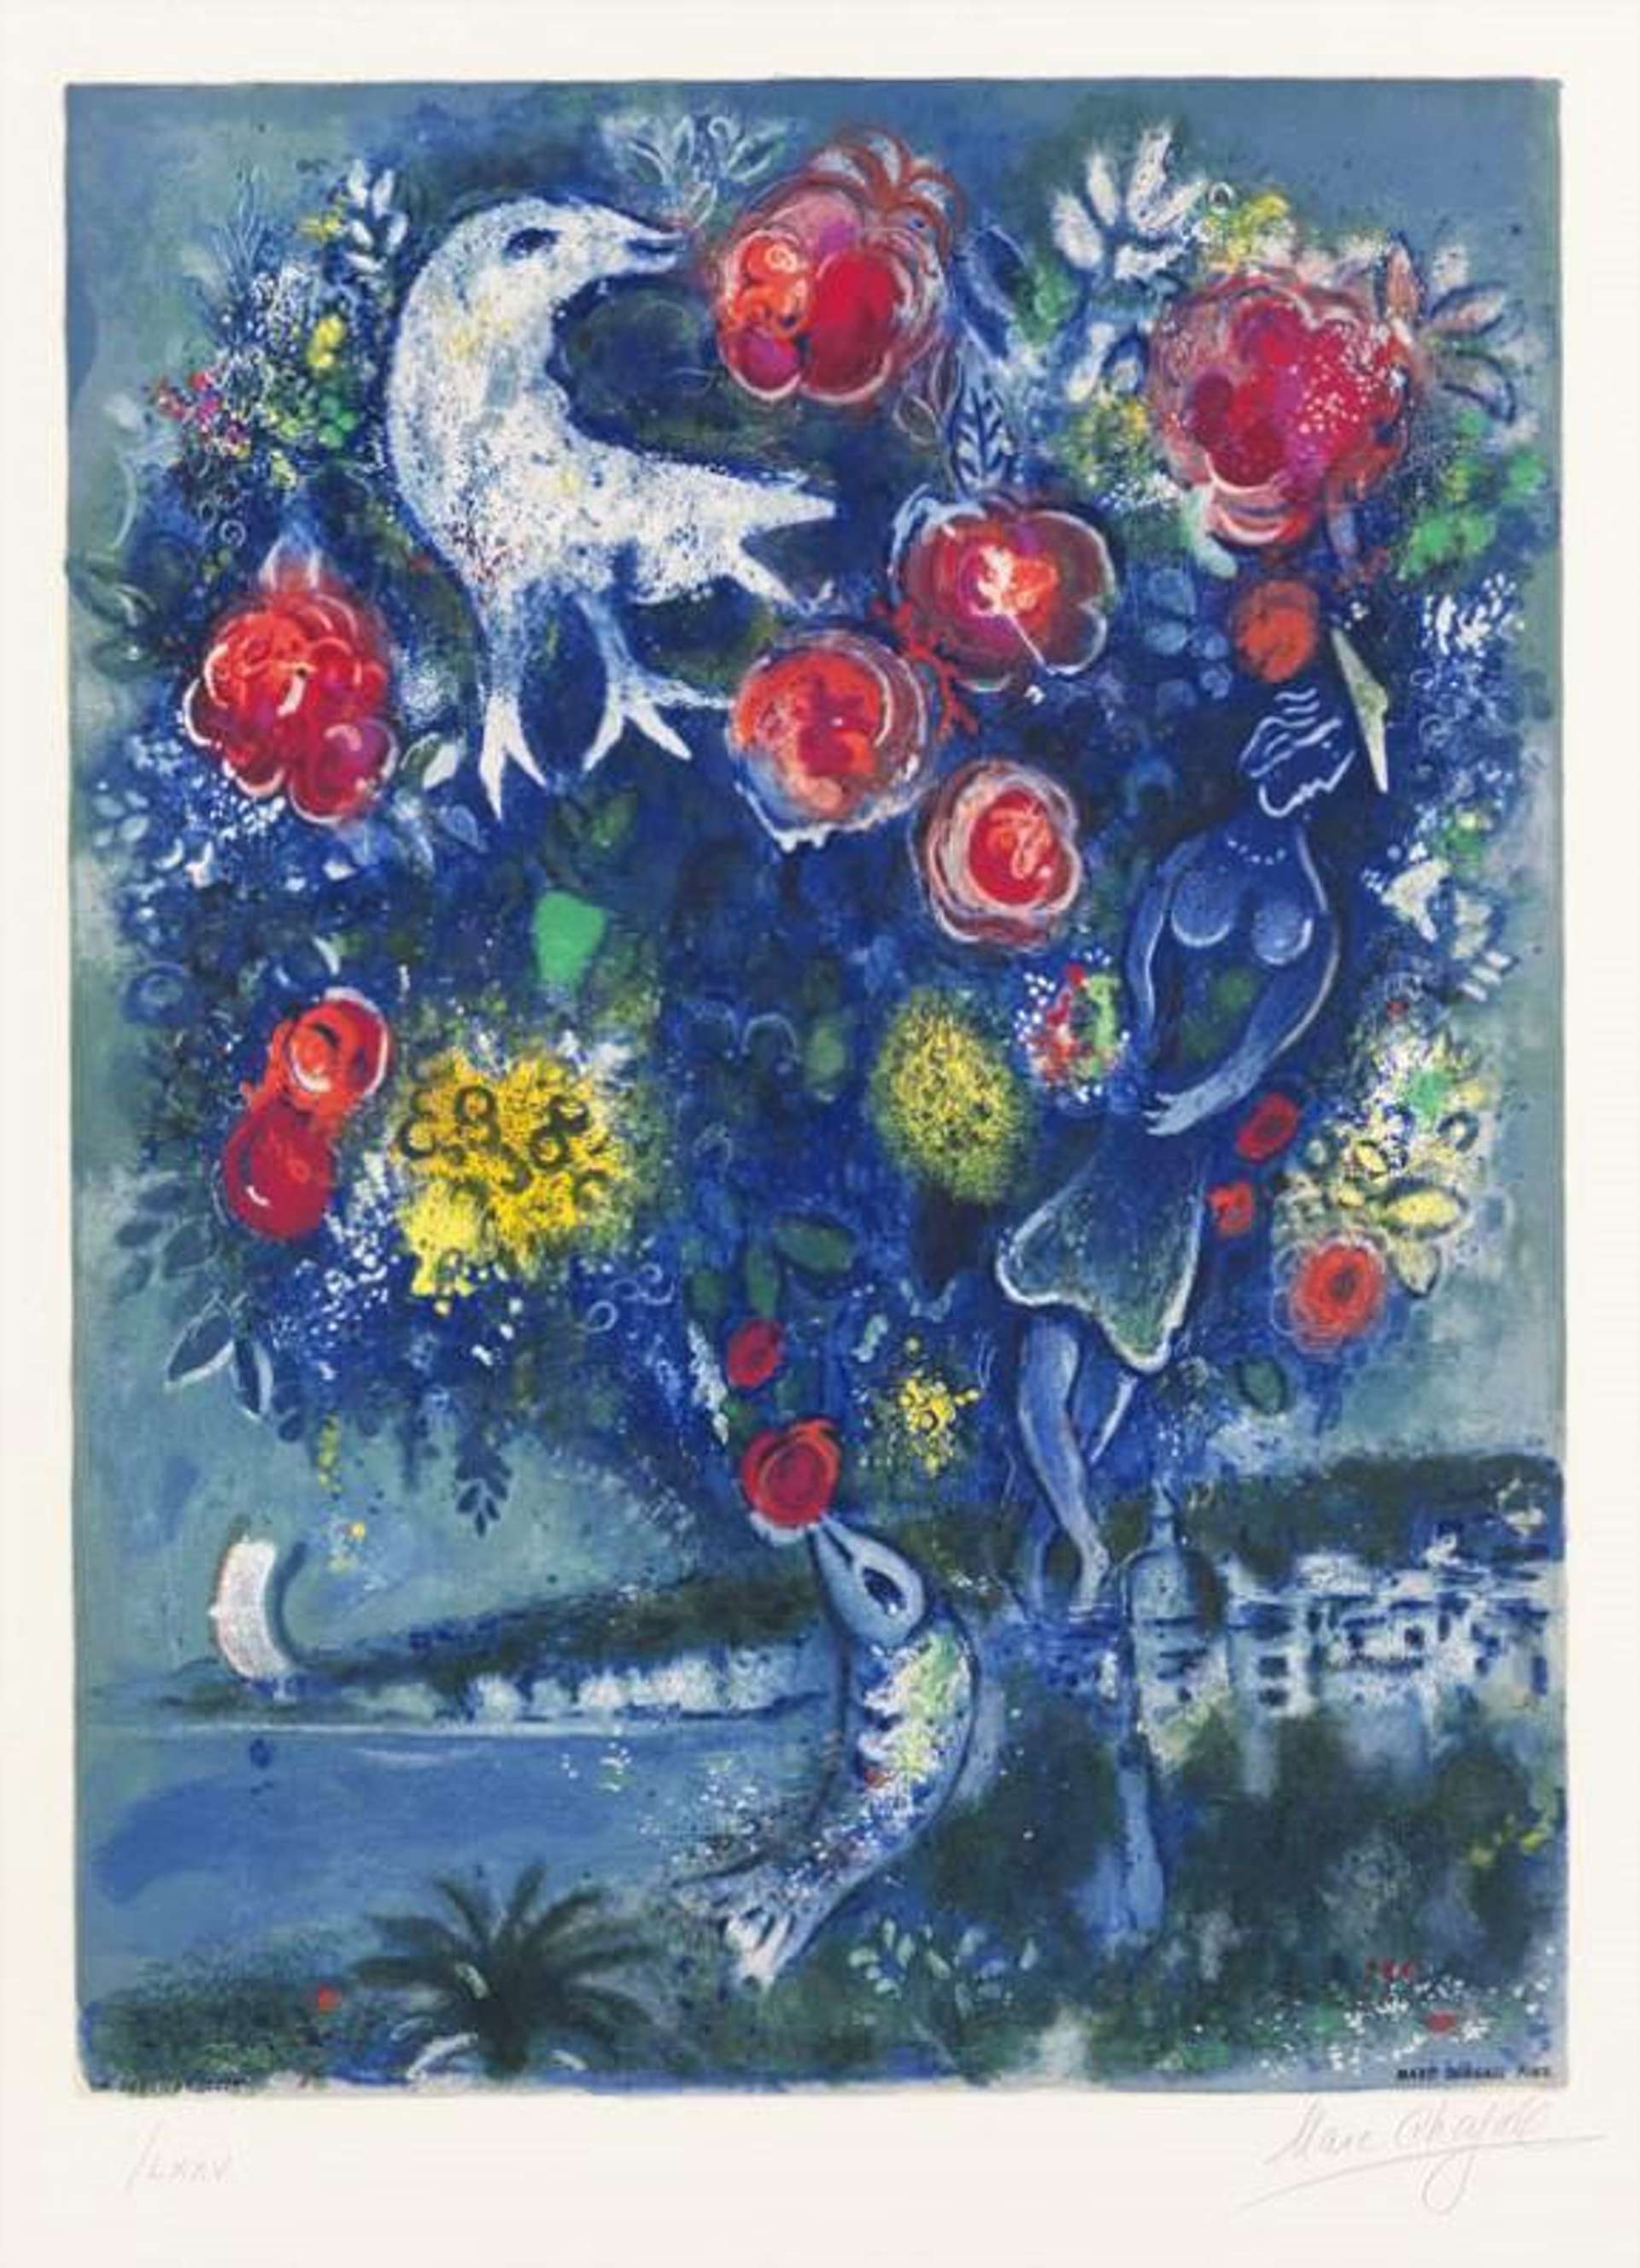 Le Baie Des Anges Au Bouquet De Roses (Côte d'Azur) - Signed Print by Marc Chagall 1967 - MyArtBroker